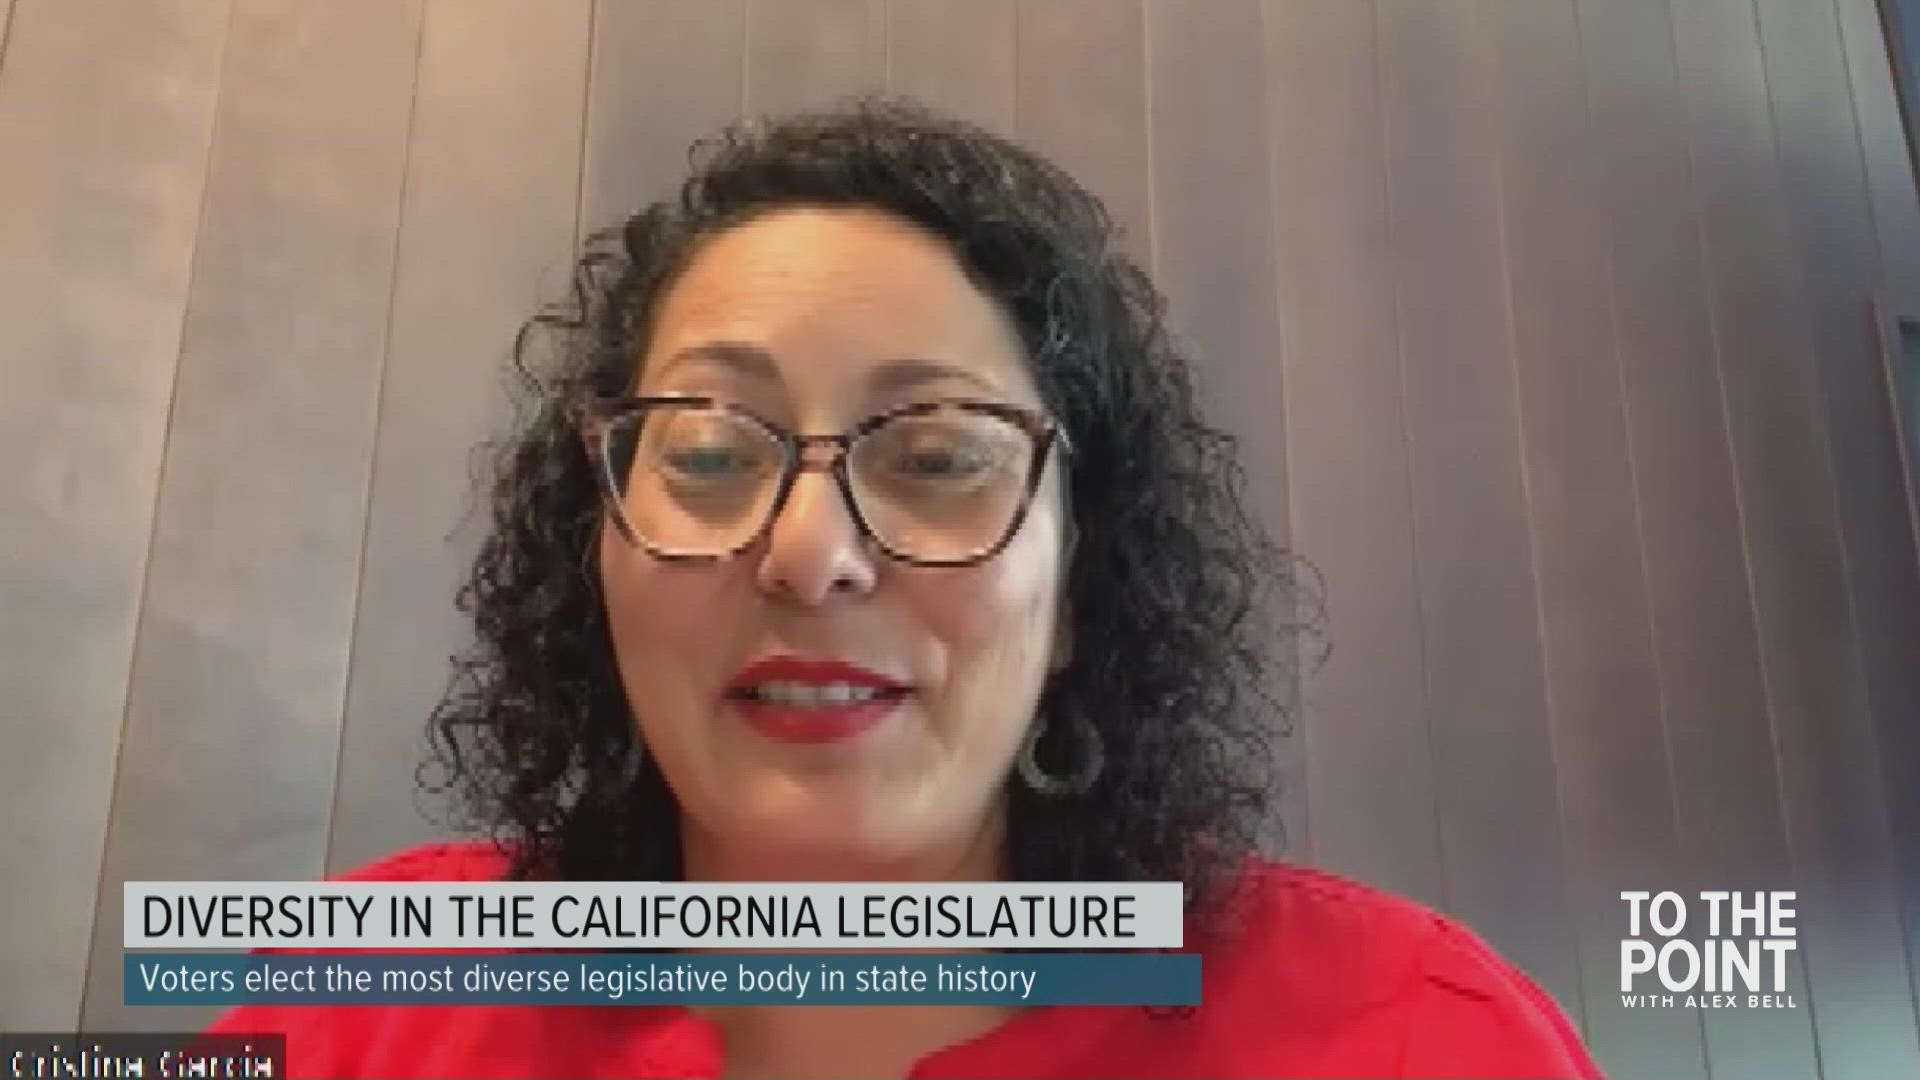 Diversity in the California legislature